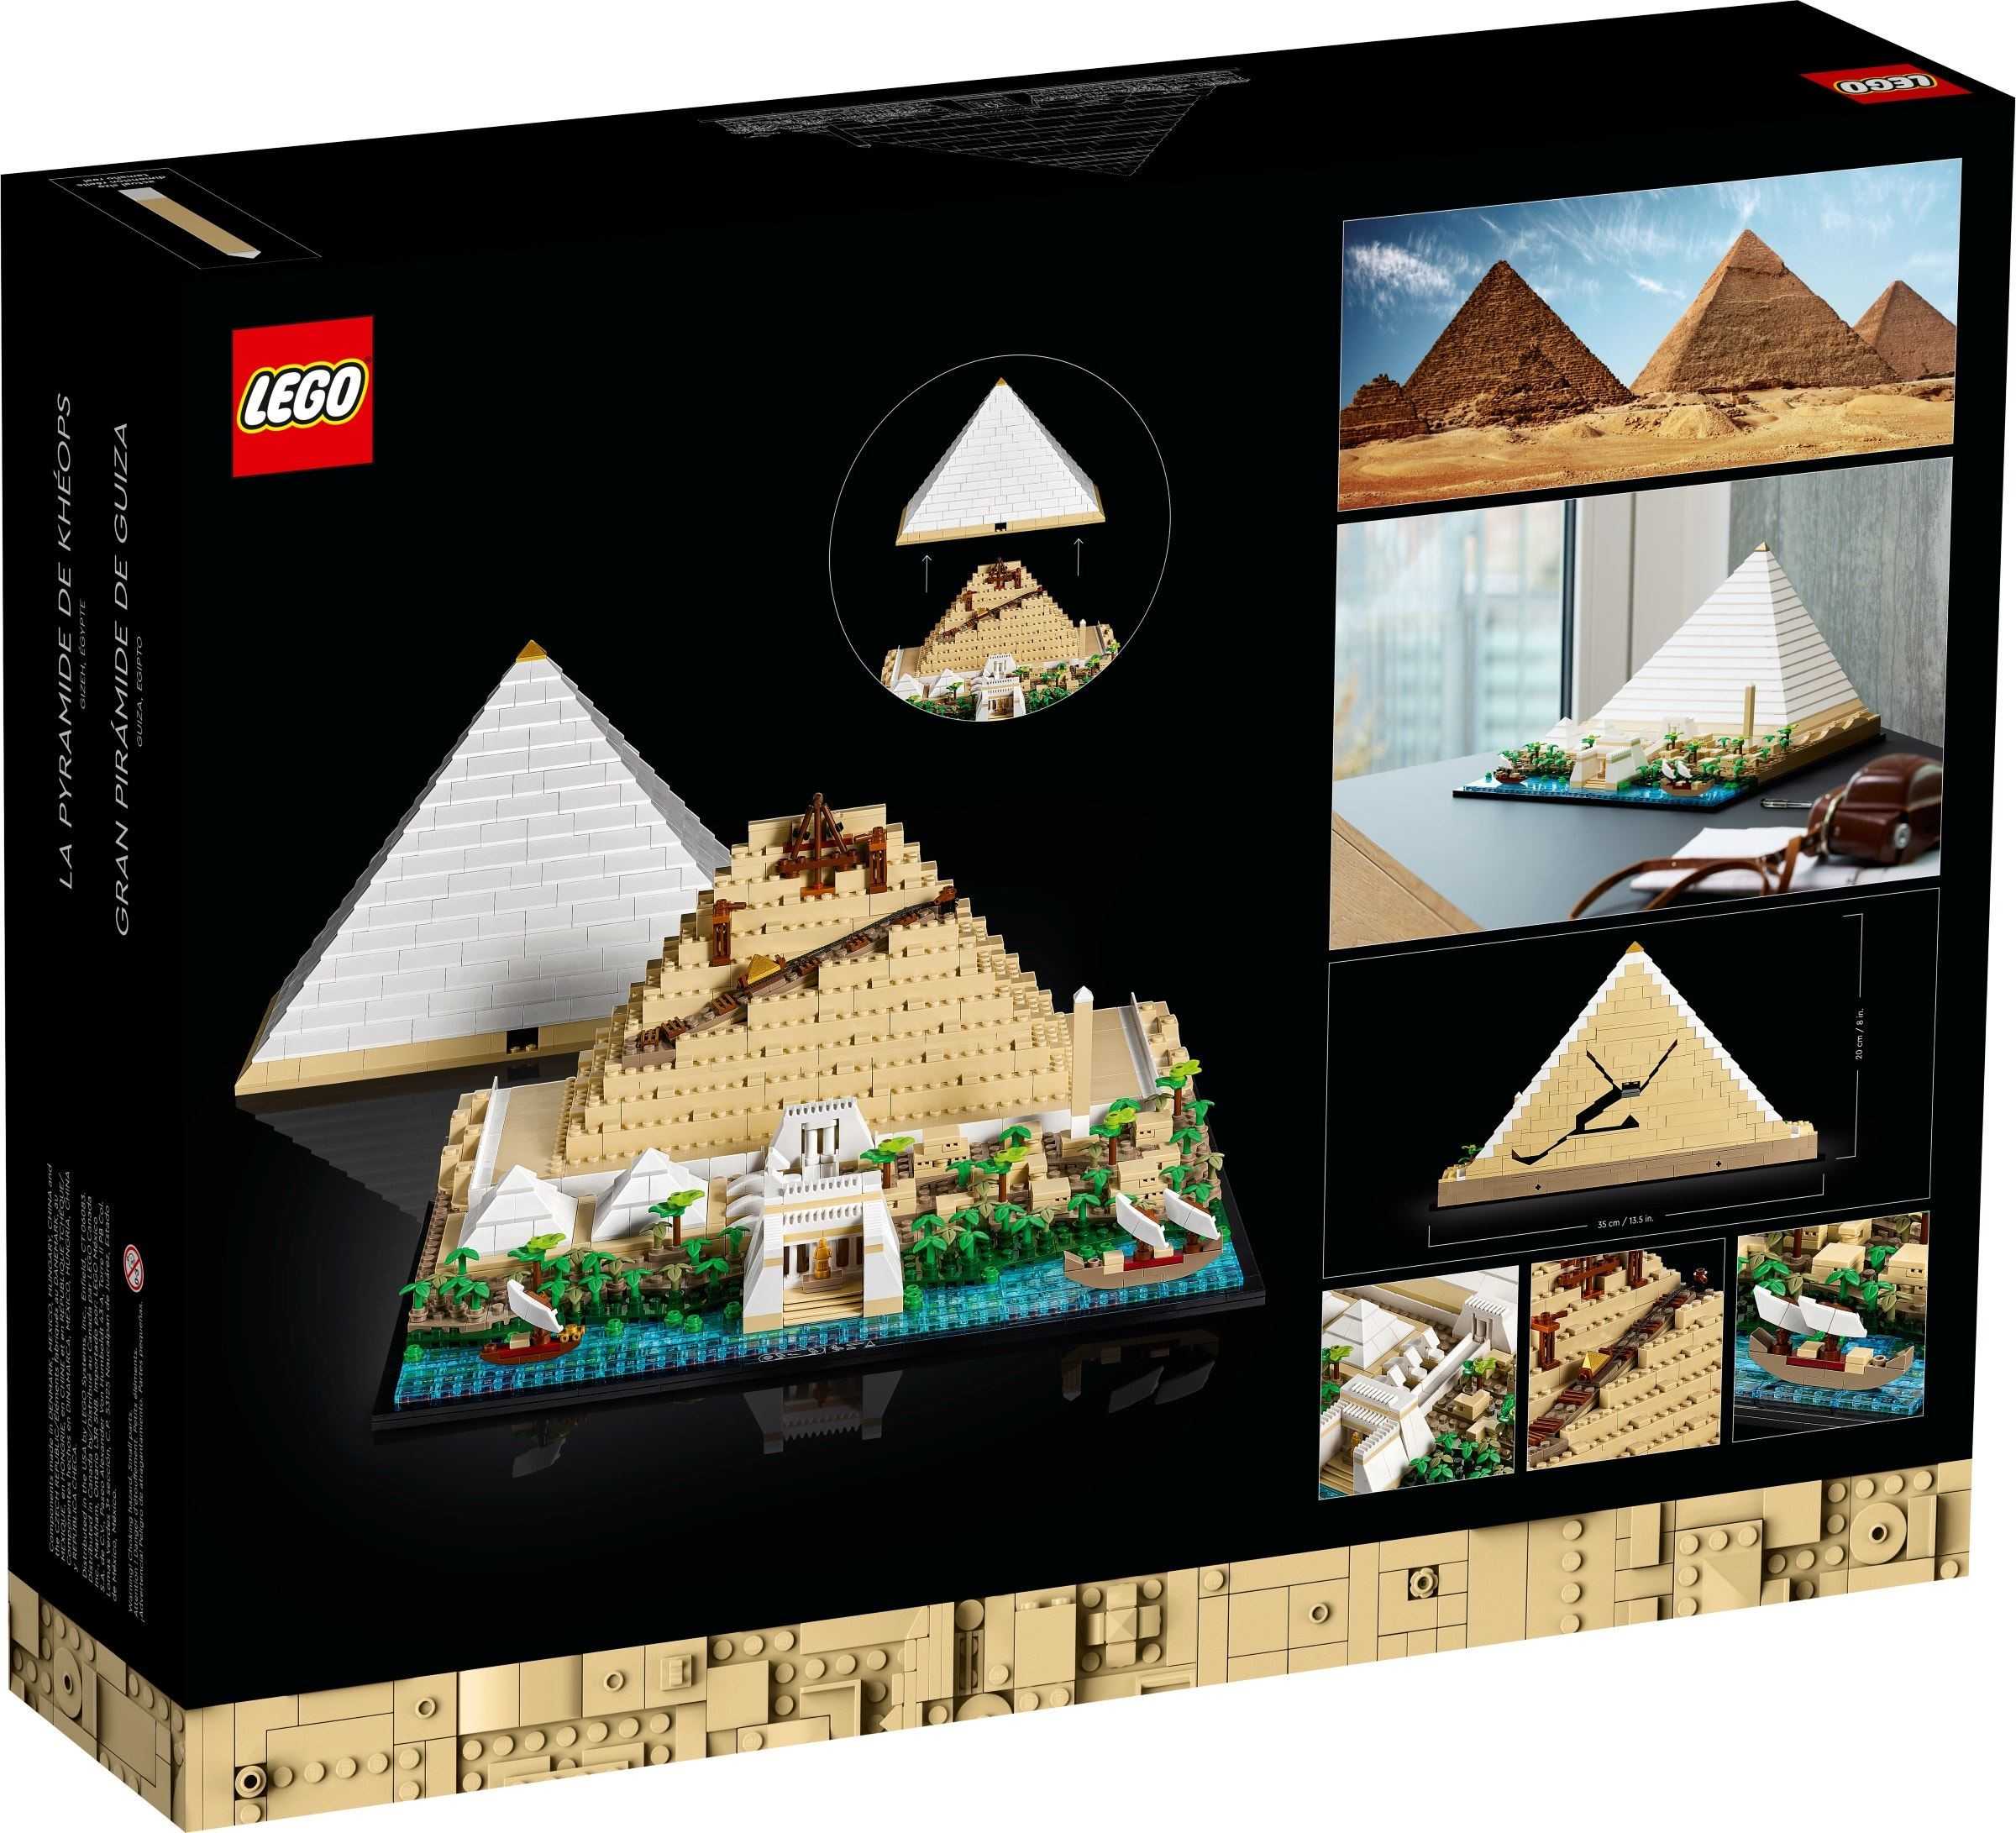 【電積系@北投】樂高 LEGO 21058 埃及吉薩大金字塔